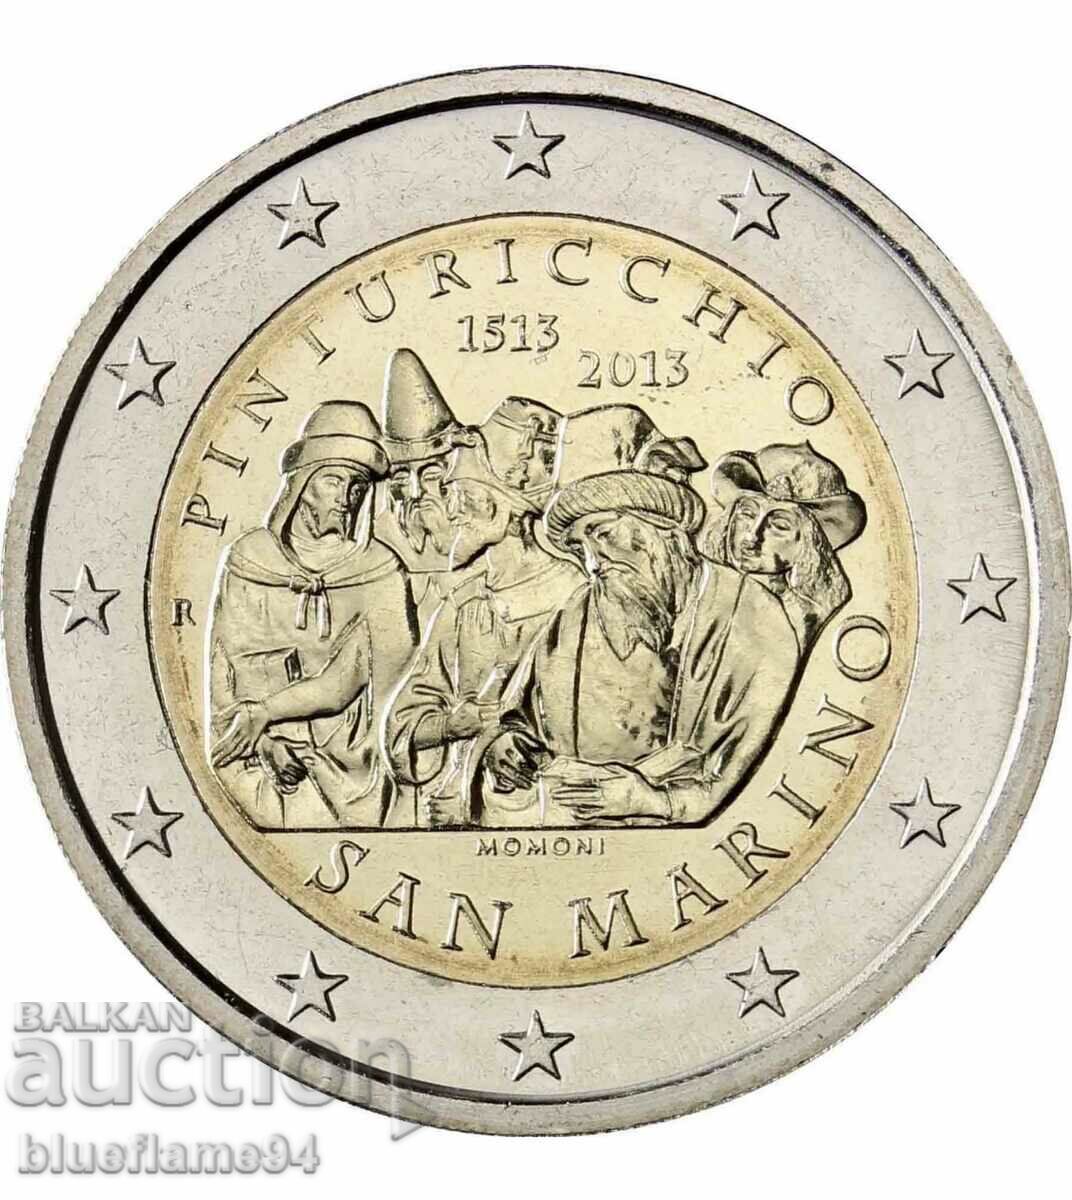 2 ευρώ Σαν Μαρίνο 2013